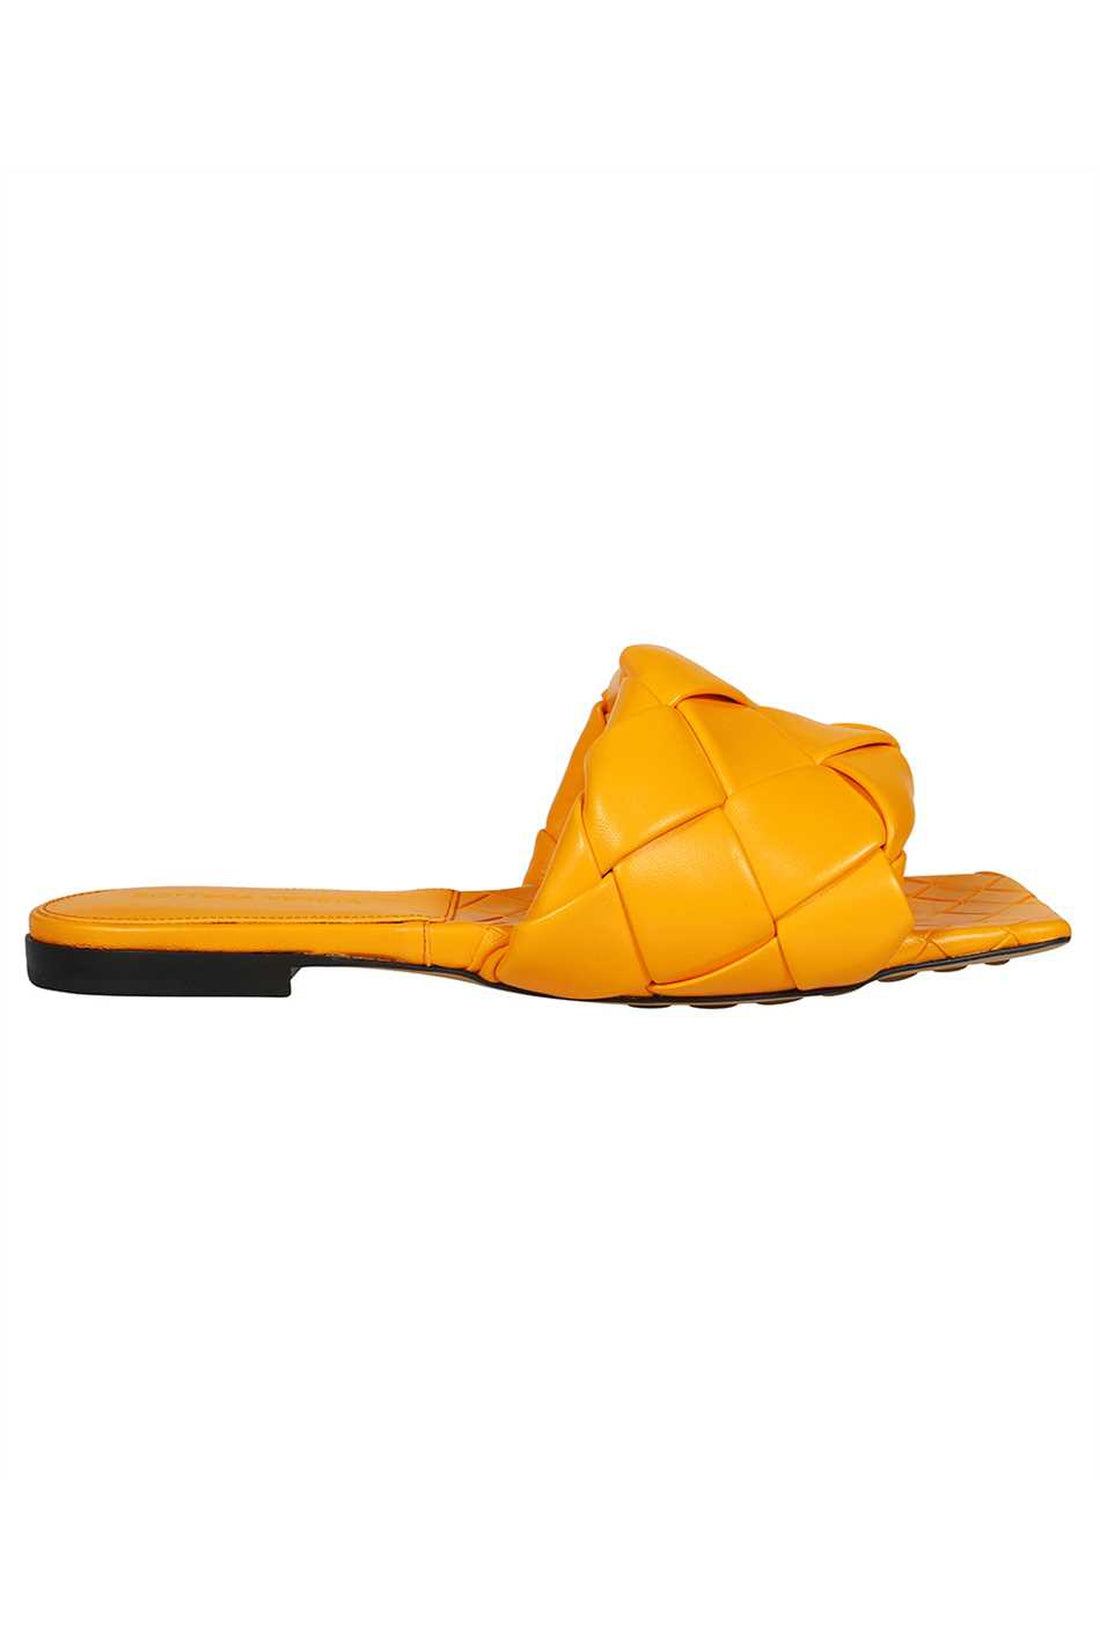 Bottega Veneta-OUTLET-SALE-Lido leather flat sandals-ARCHIVIST